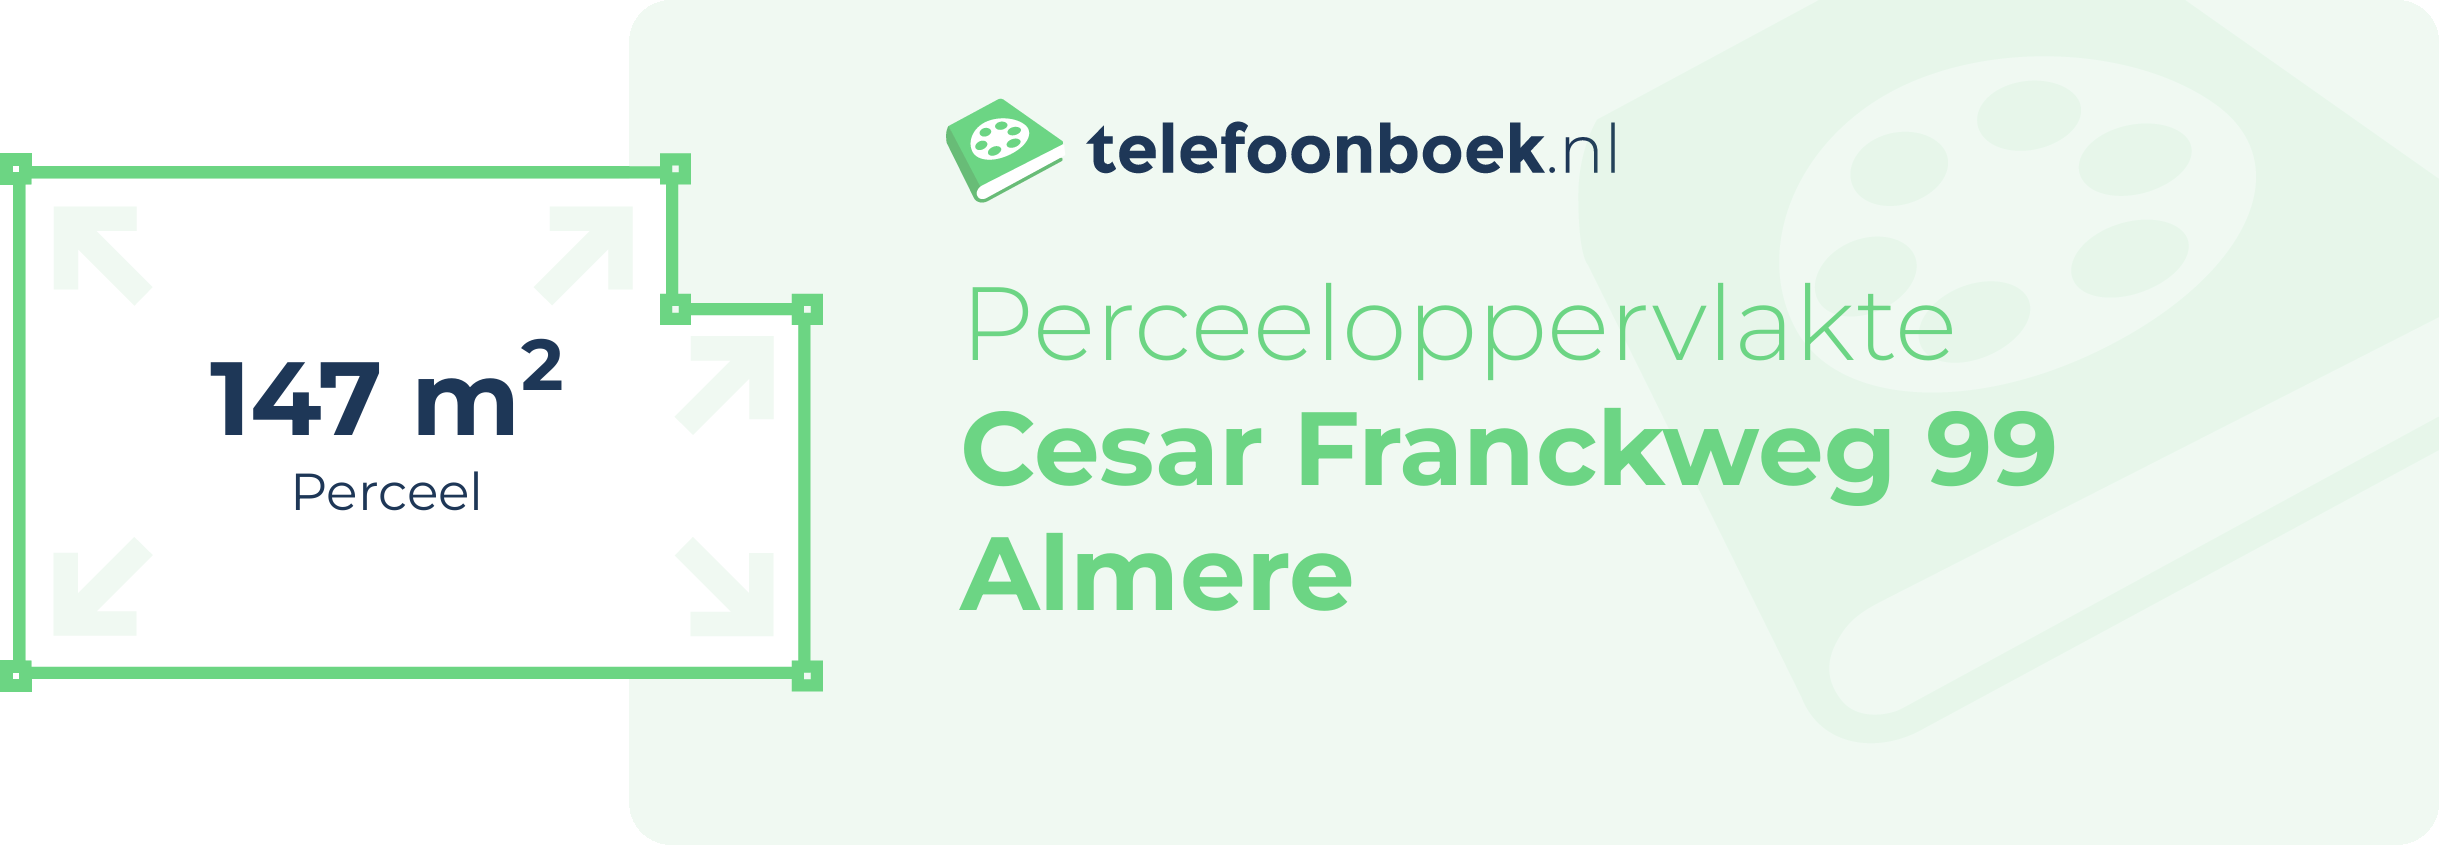 Perceeloppervlakte Cesar Franckweg 99 Almere